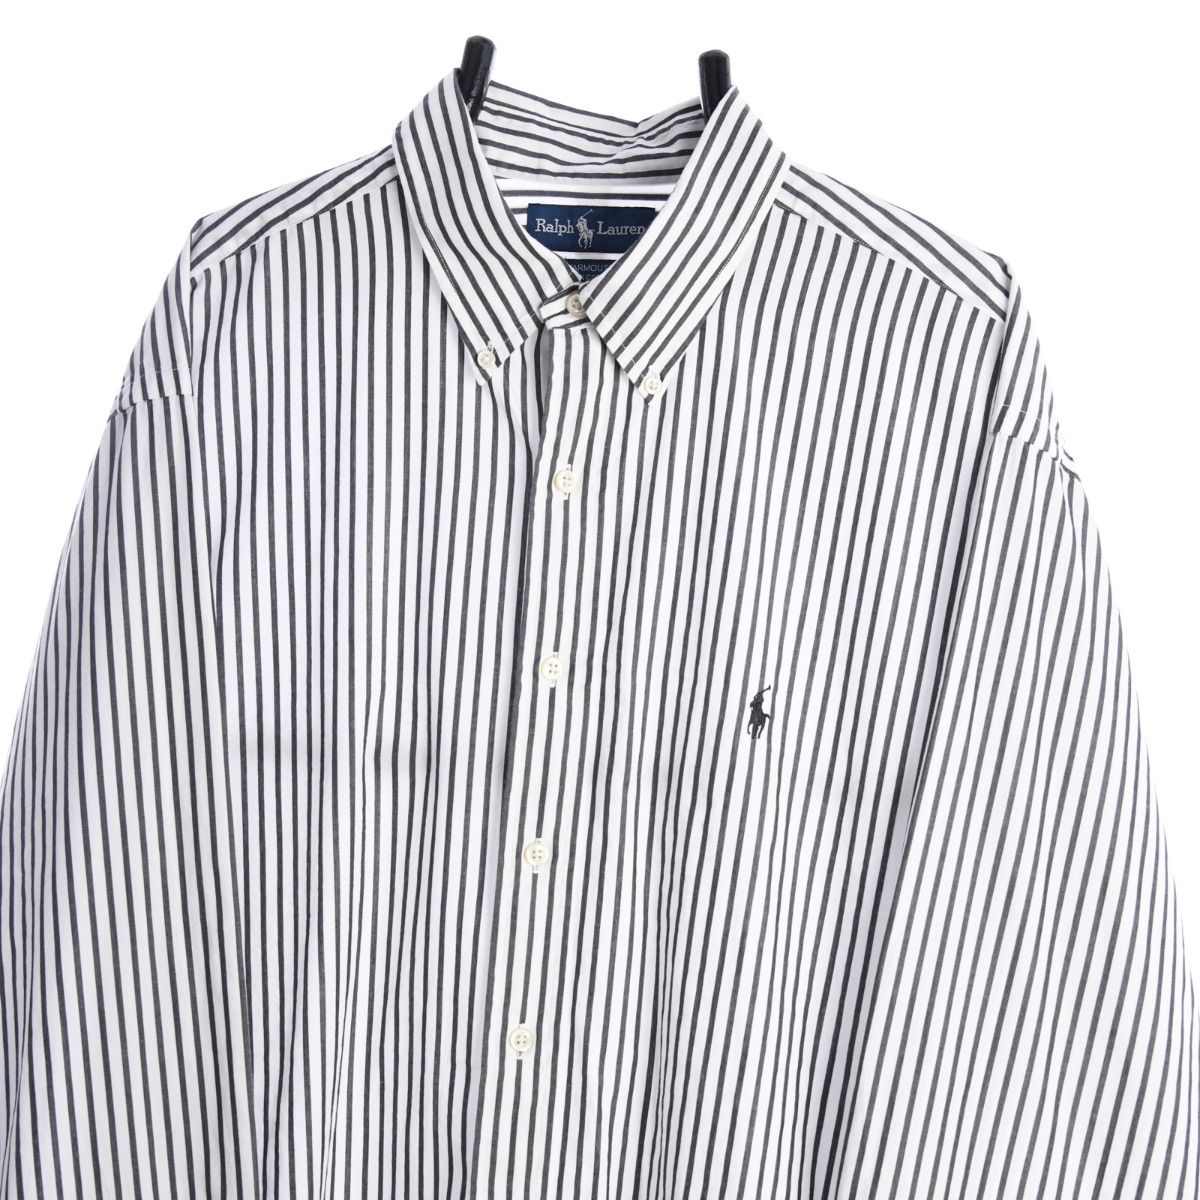 Ralph Lauren Yarmouth White Shirt